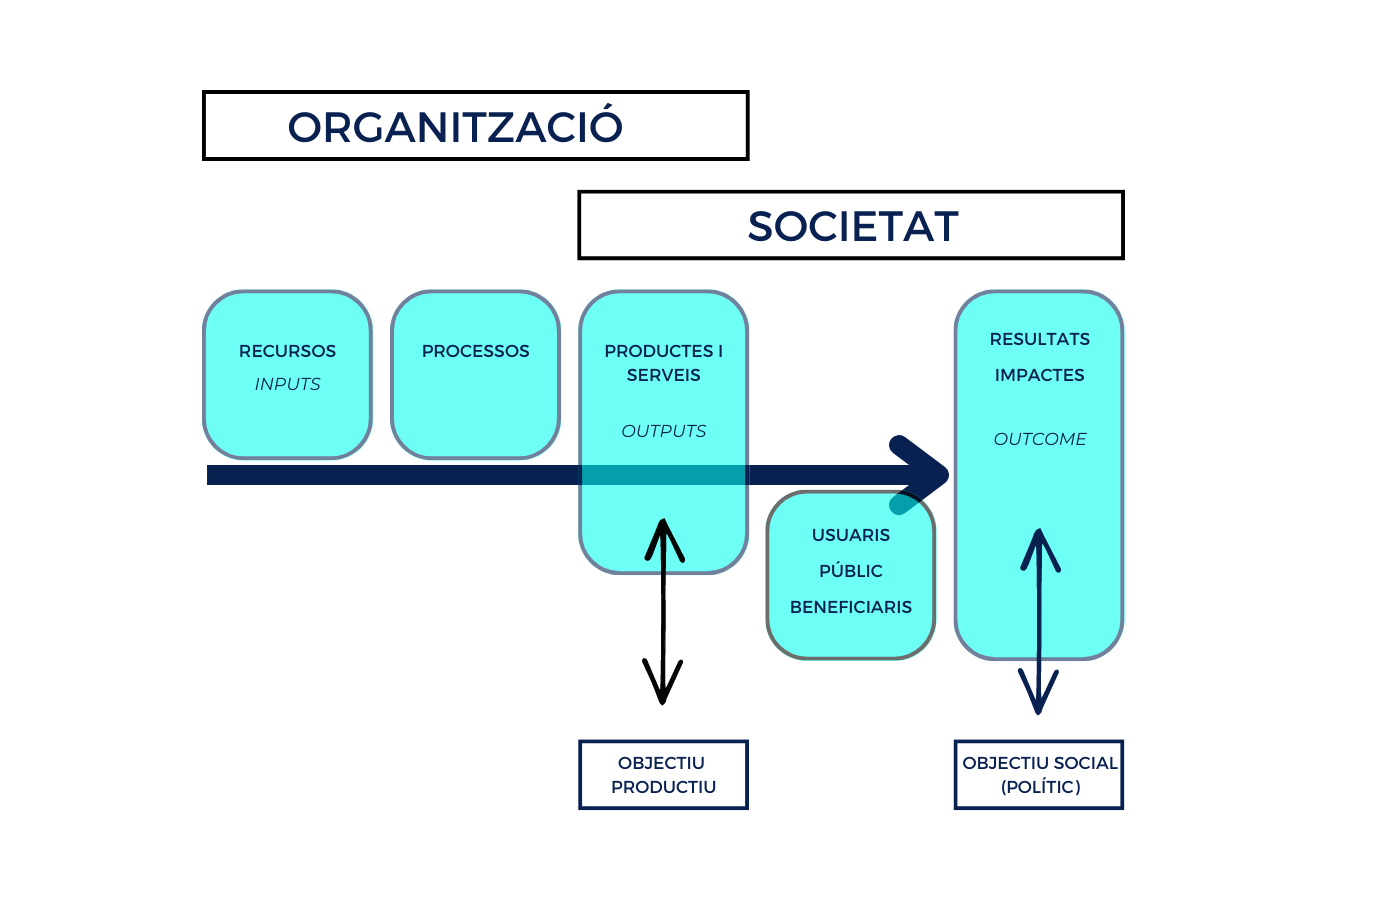 gràfic sobre l'organització i la societat